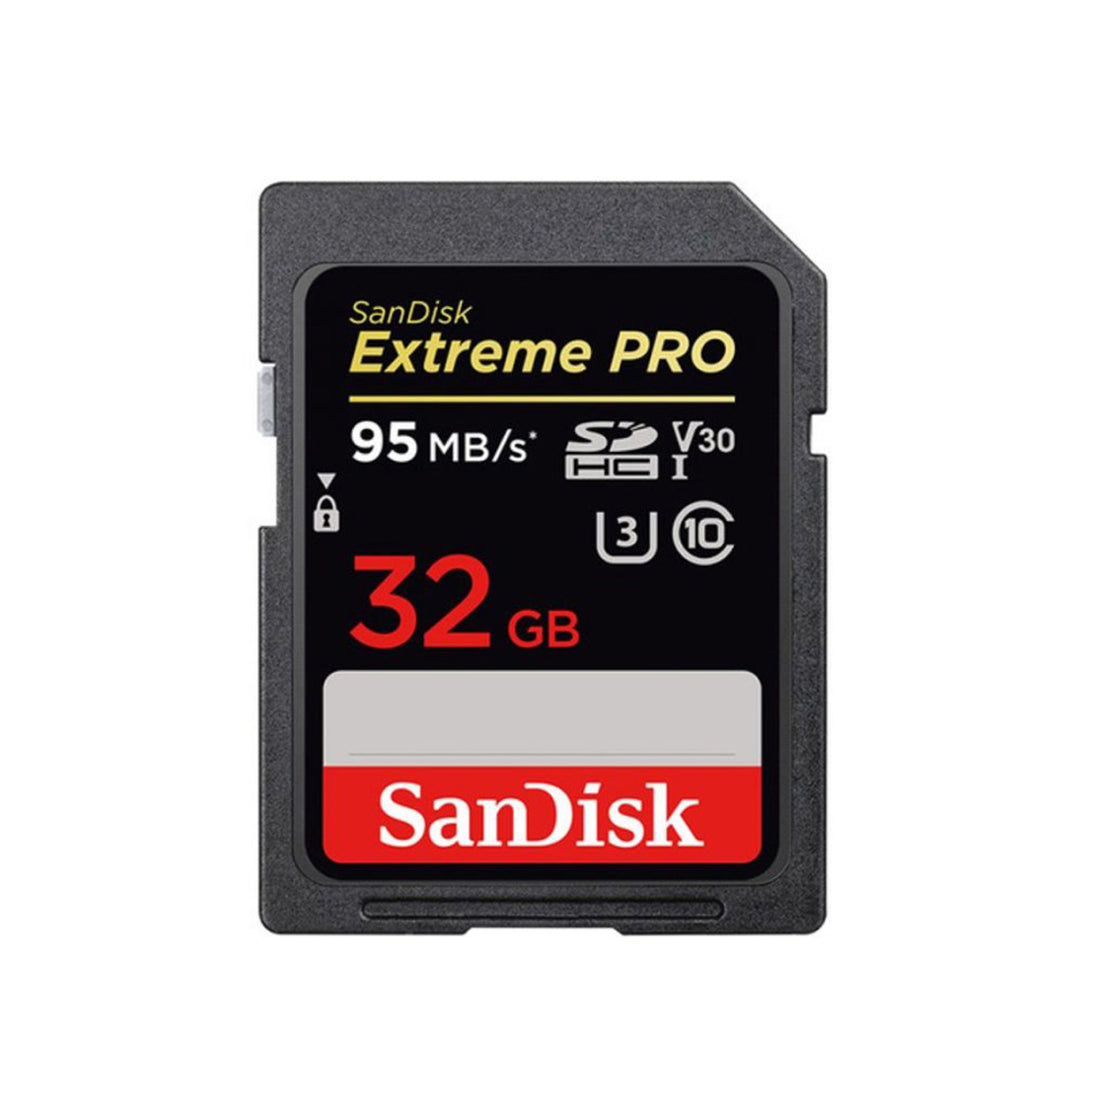 Extreme Pro SDHC 32GB - 95MB/s V30 UHS-I U3